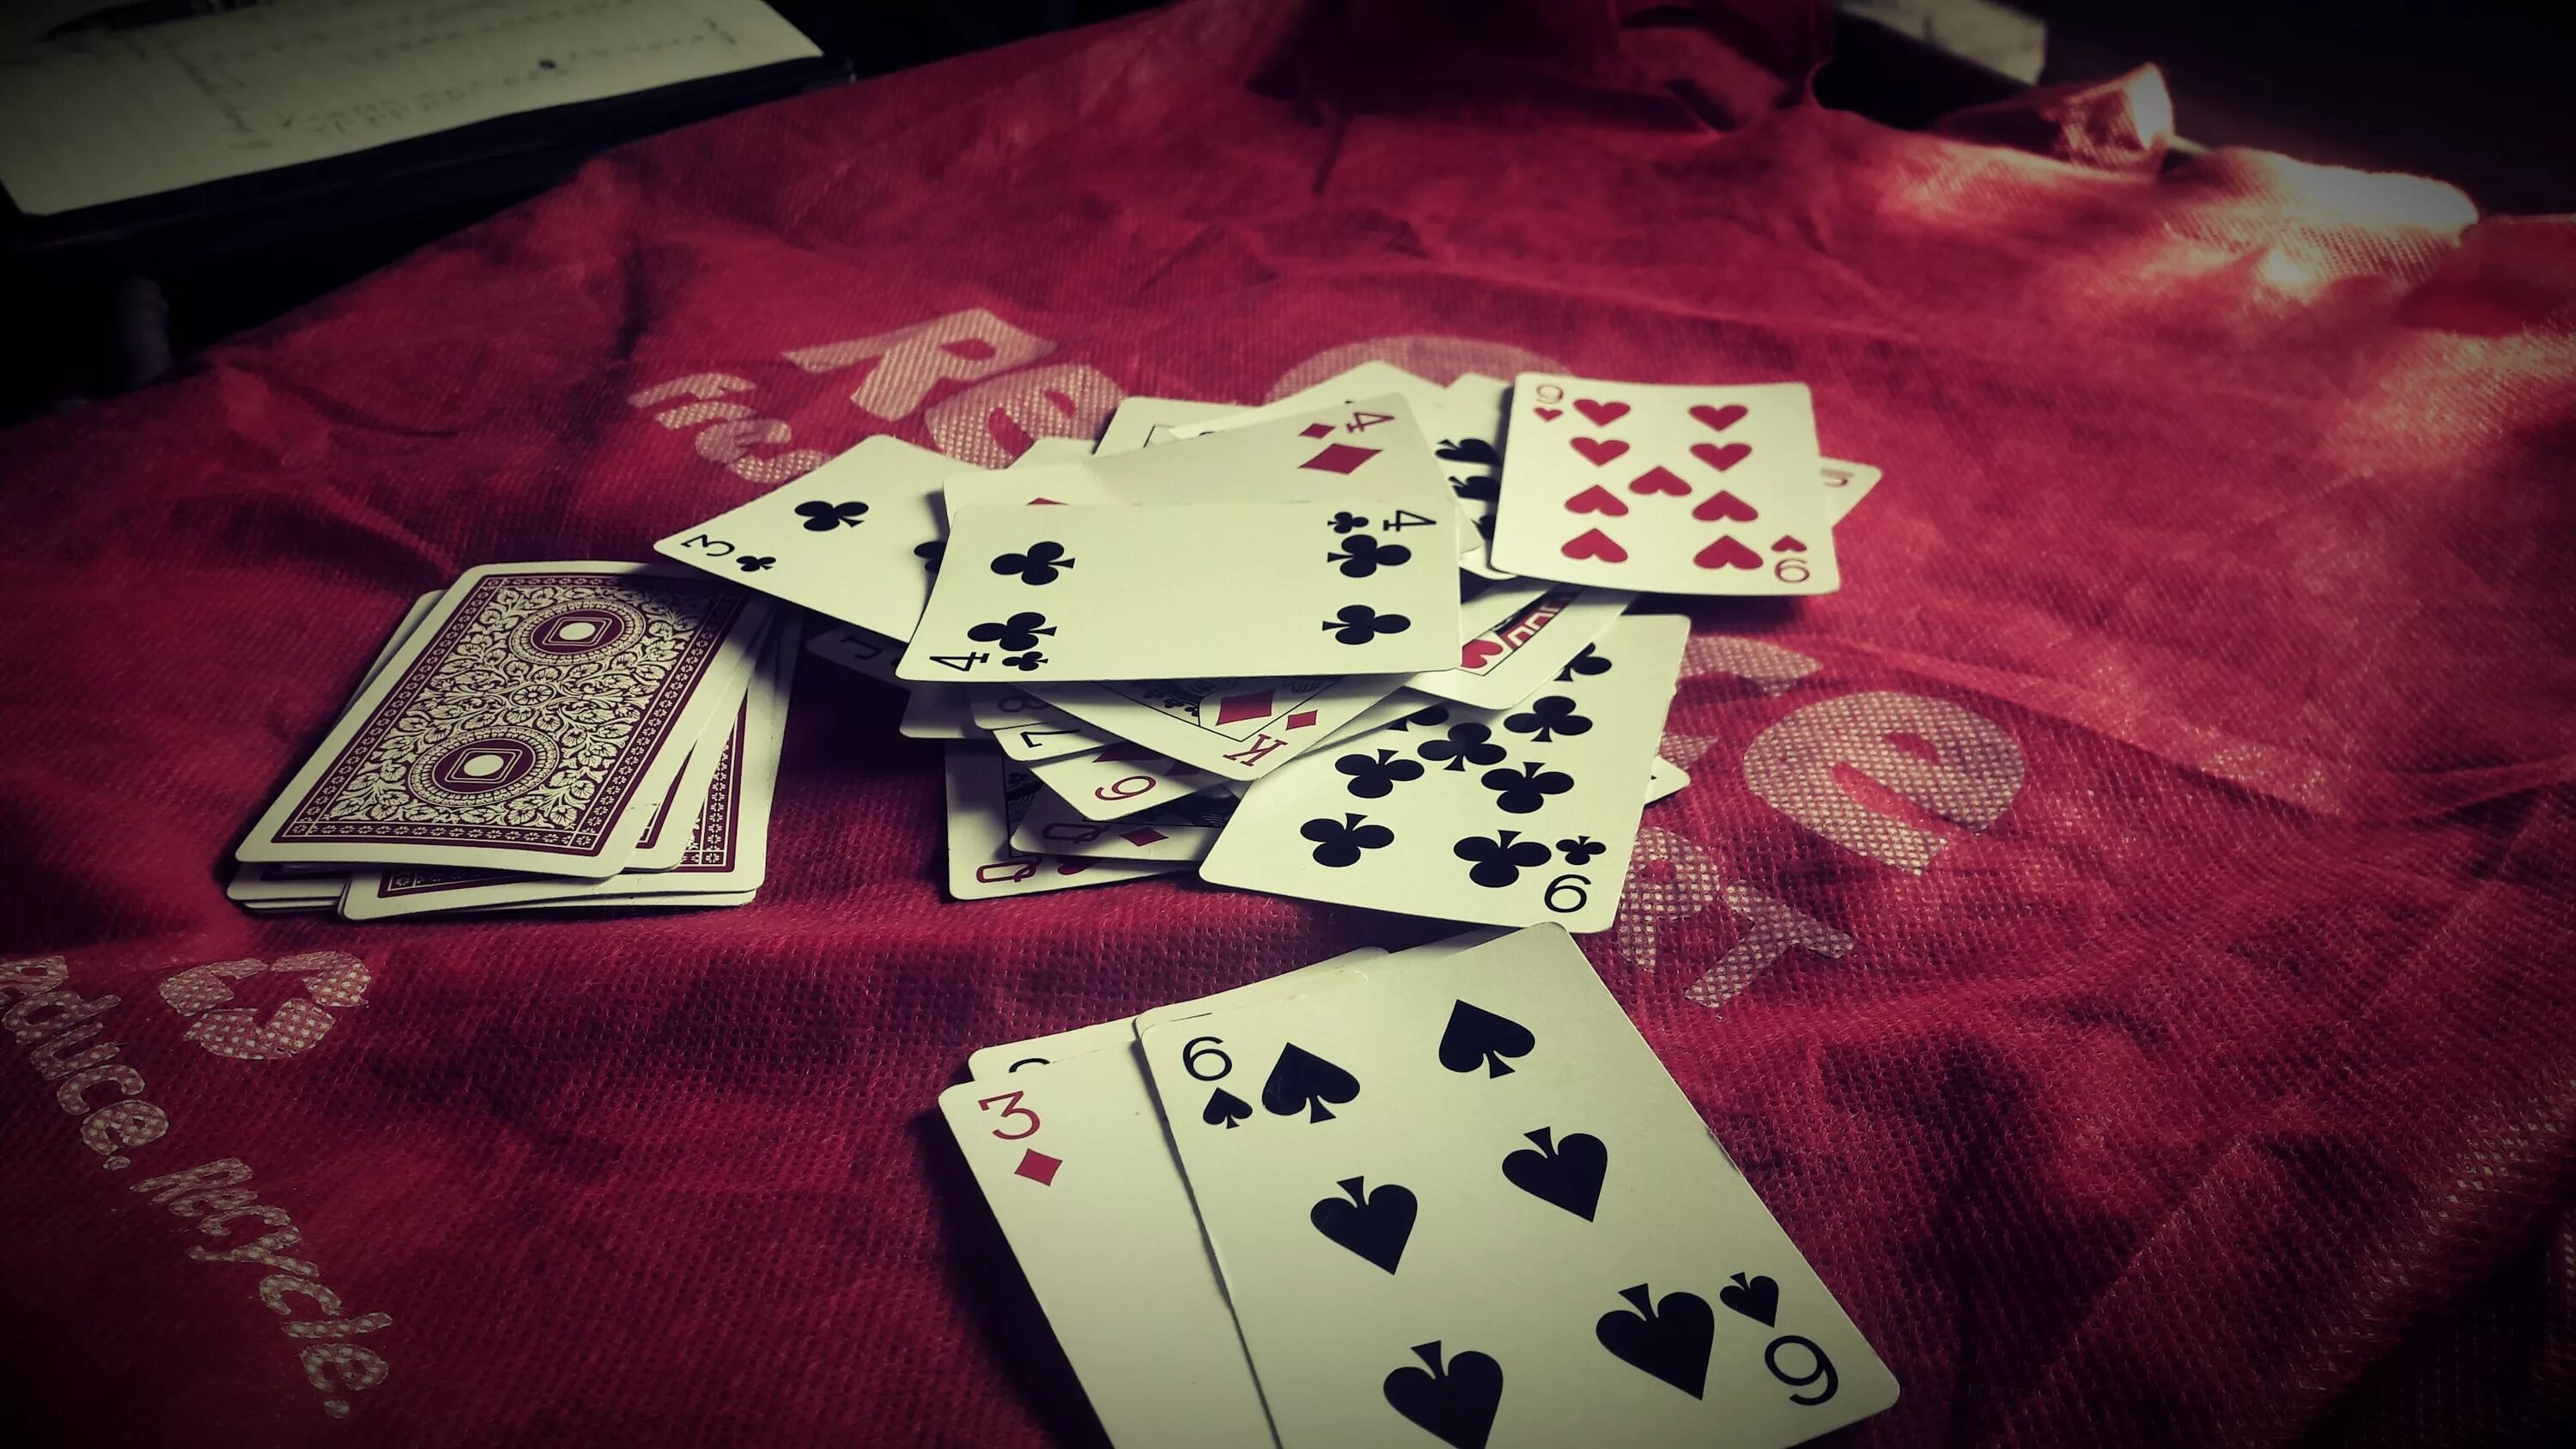 Картинки игр в карты. Игральные карты. Карточный стол. Стол для карточных игр. Азартная карточная игра.